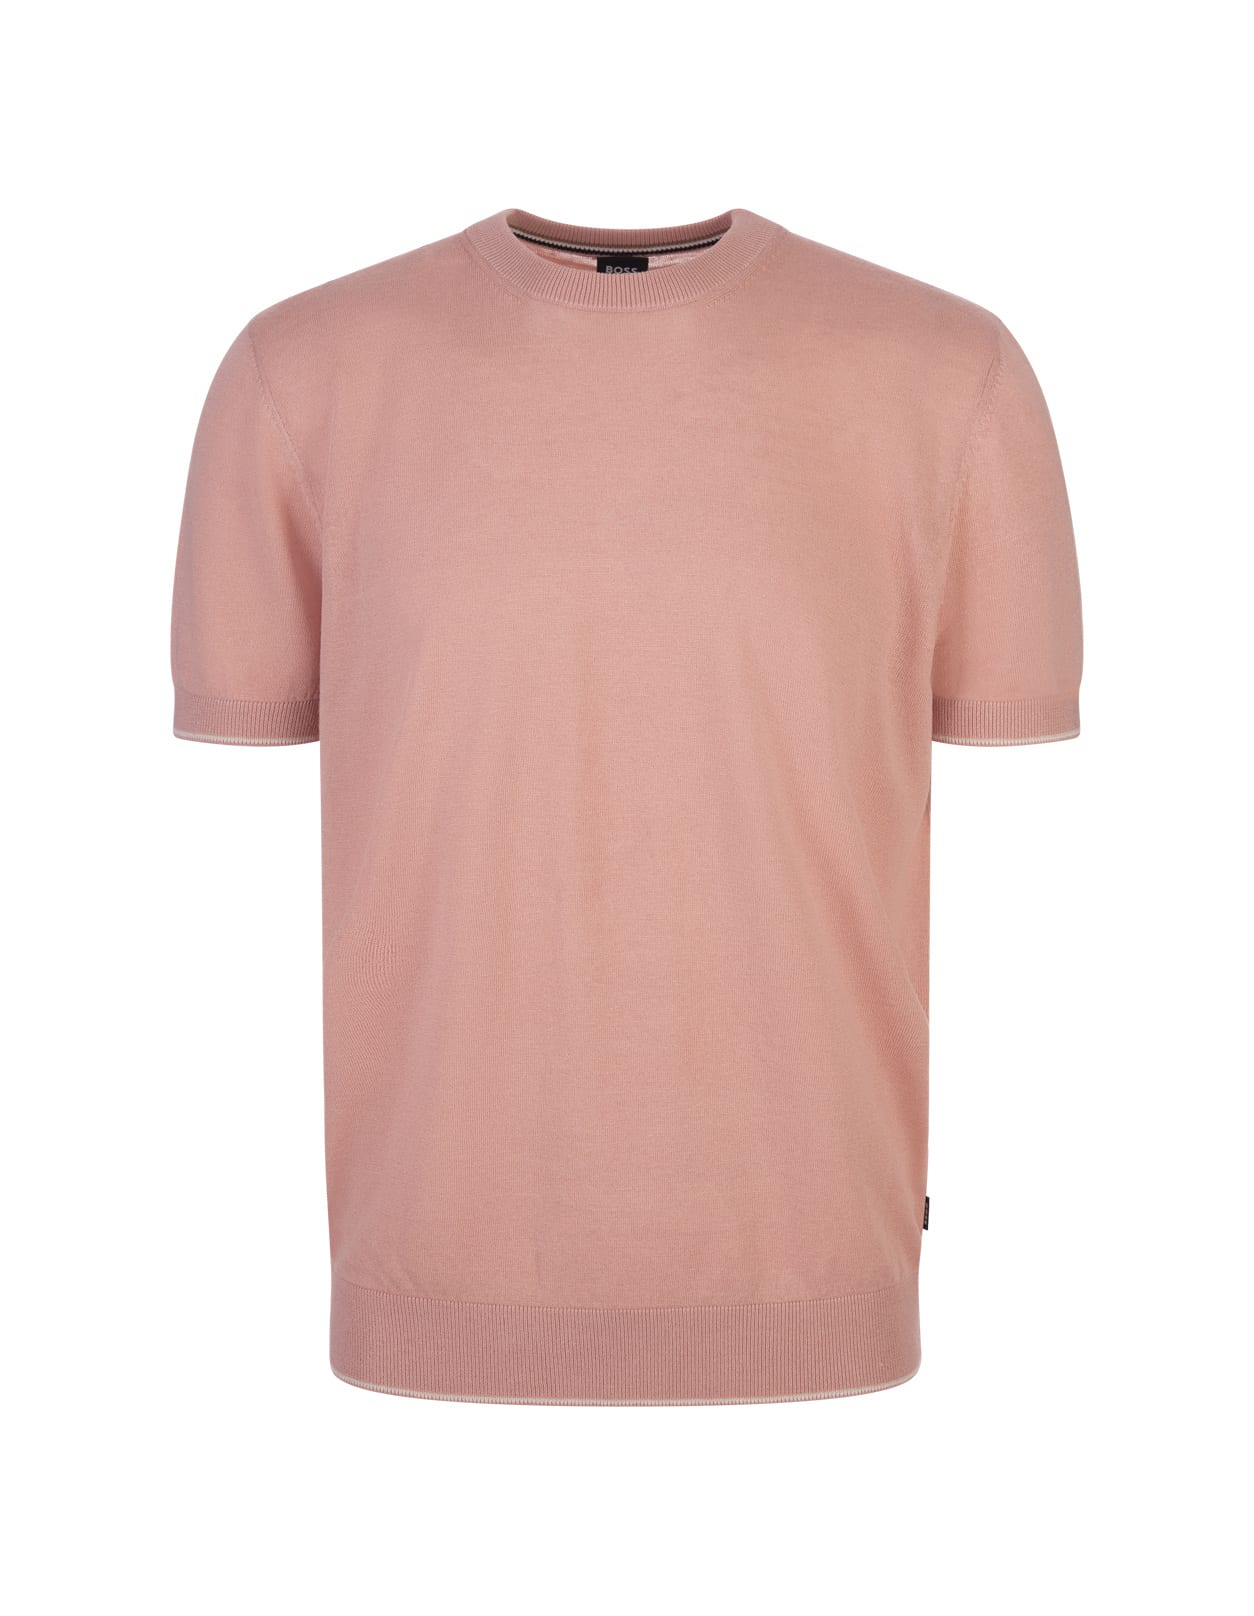 Shop Hugo Boss Light Pink Linen Blend Sweater